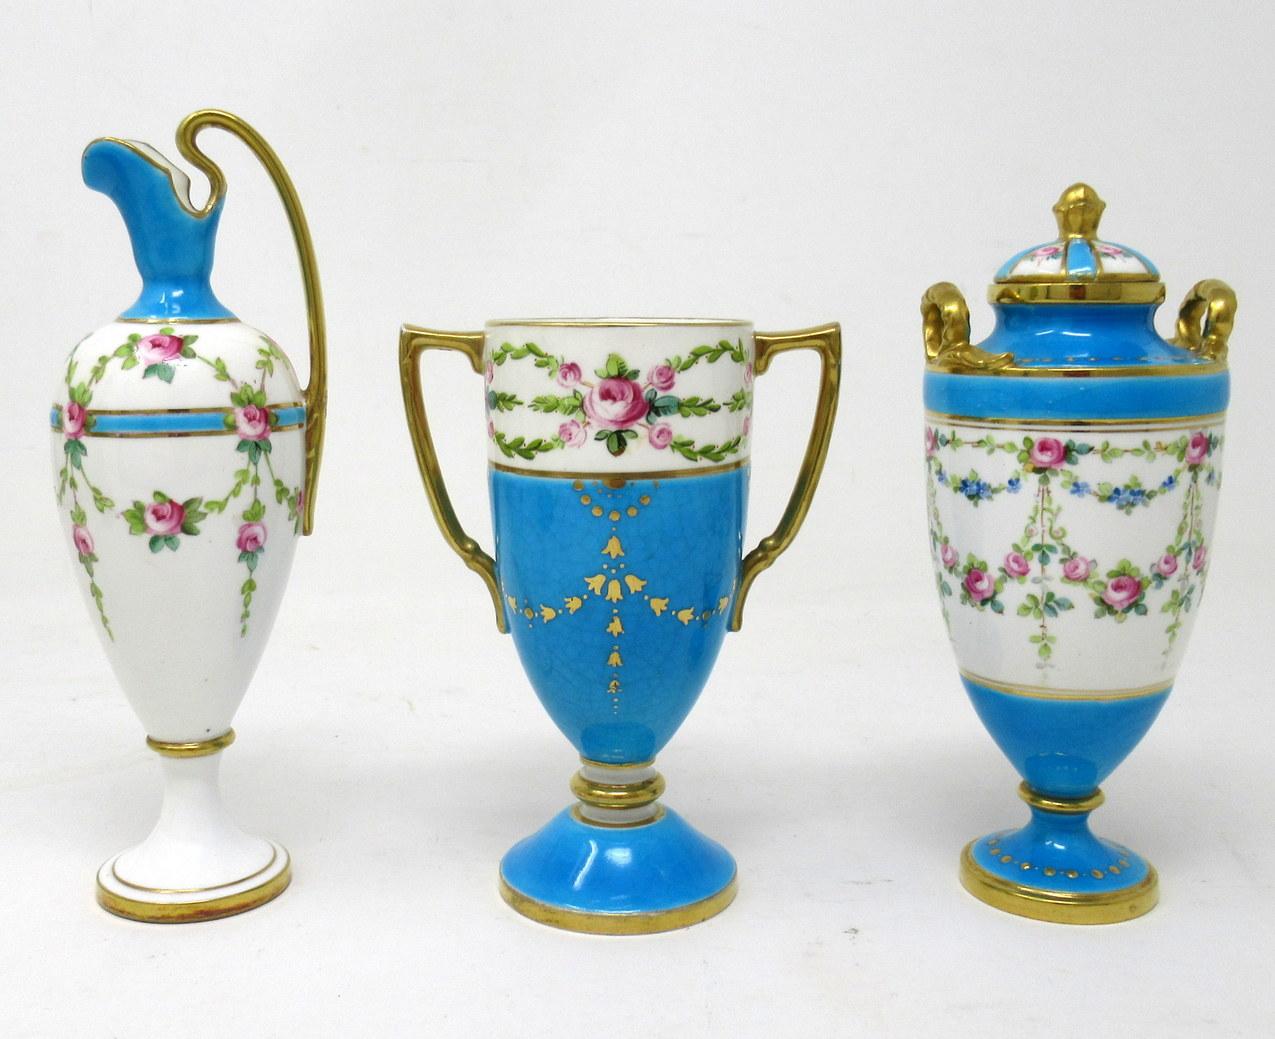 Atemberaubendes Beispiel für eine Sammlung von drei dekorativen englischen Minton-Porzellan-Miniaturen: eine Urne mit Deckel und zwei Henkeln, eine Vase mit zwei Henkeln und eine hohe, schlanke Kanne, alle von hervorragender Qualität. 

Jede ist